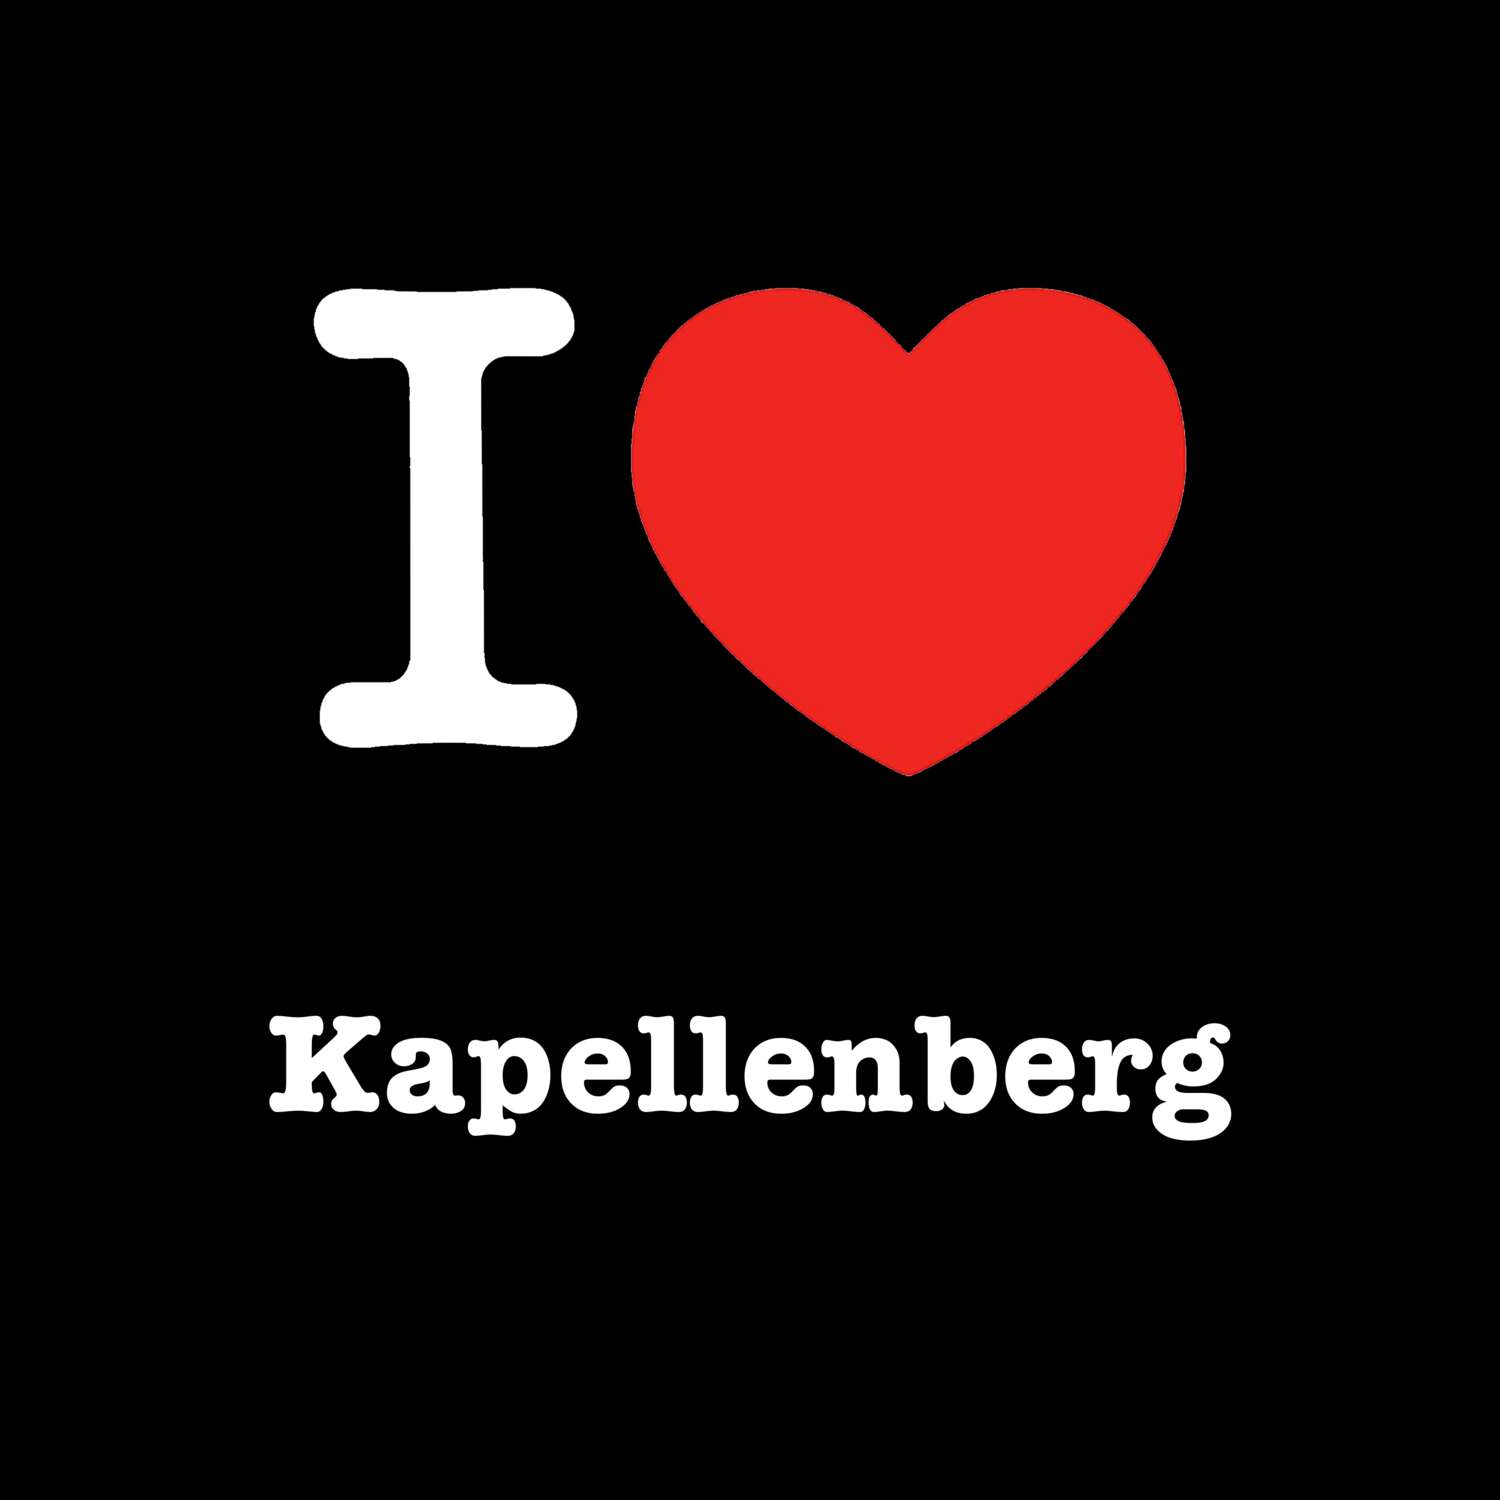 Kapellenberg T-Shirt »I love«